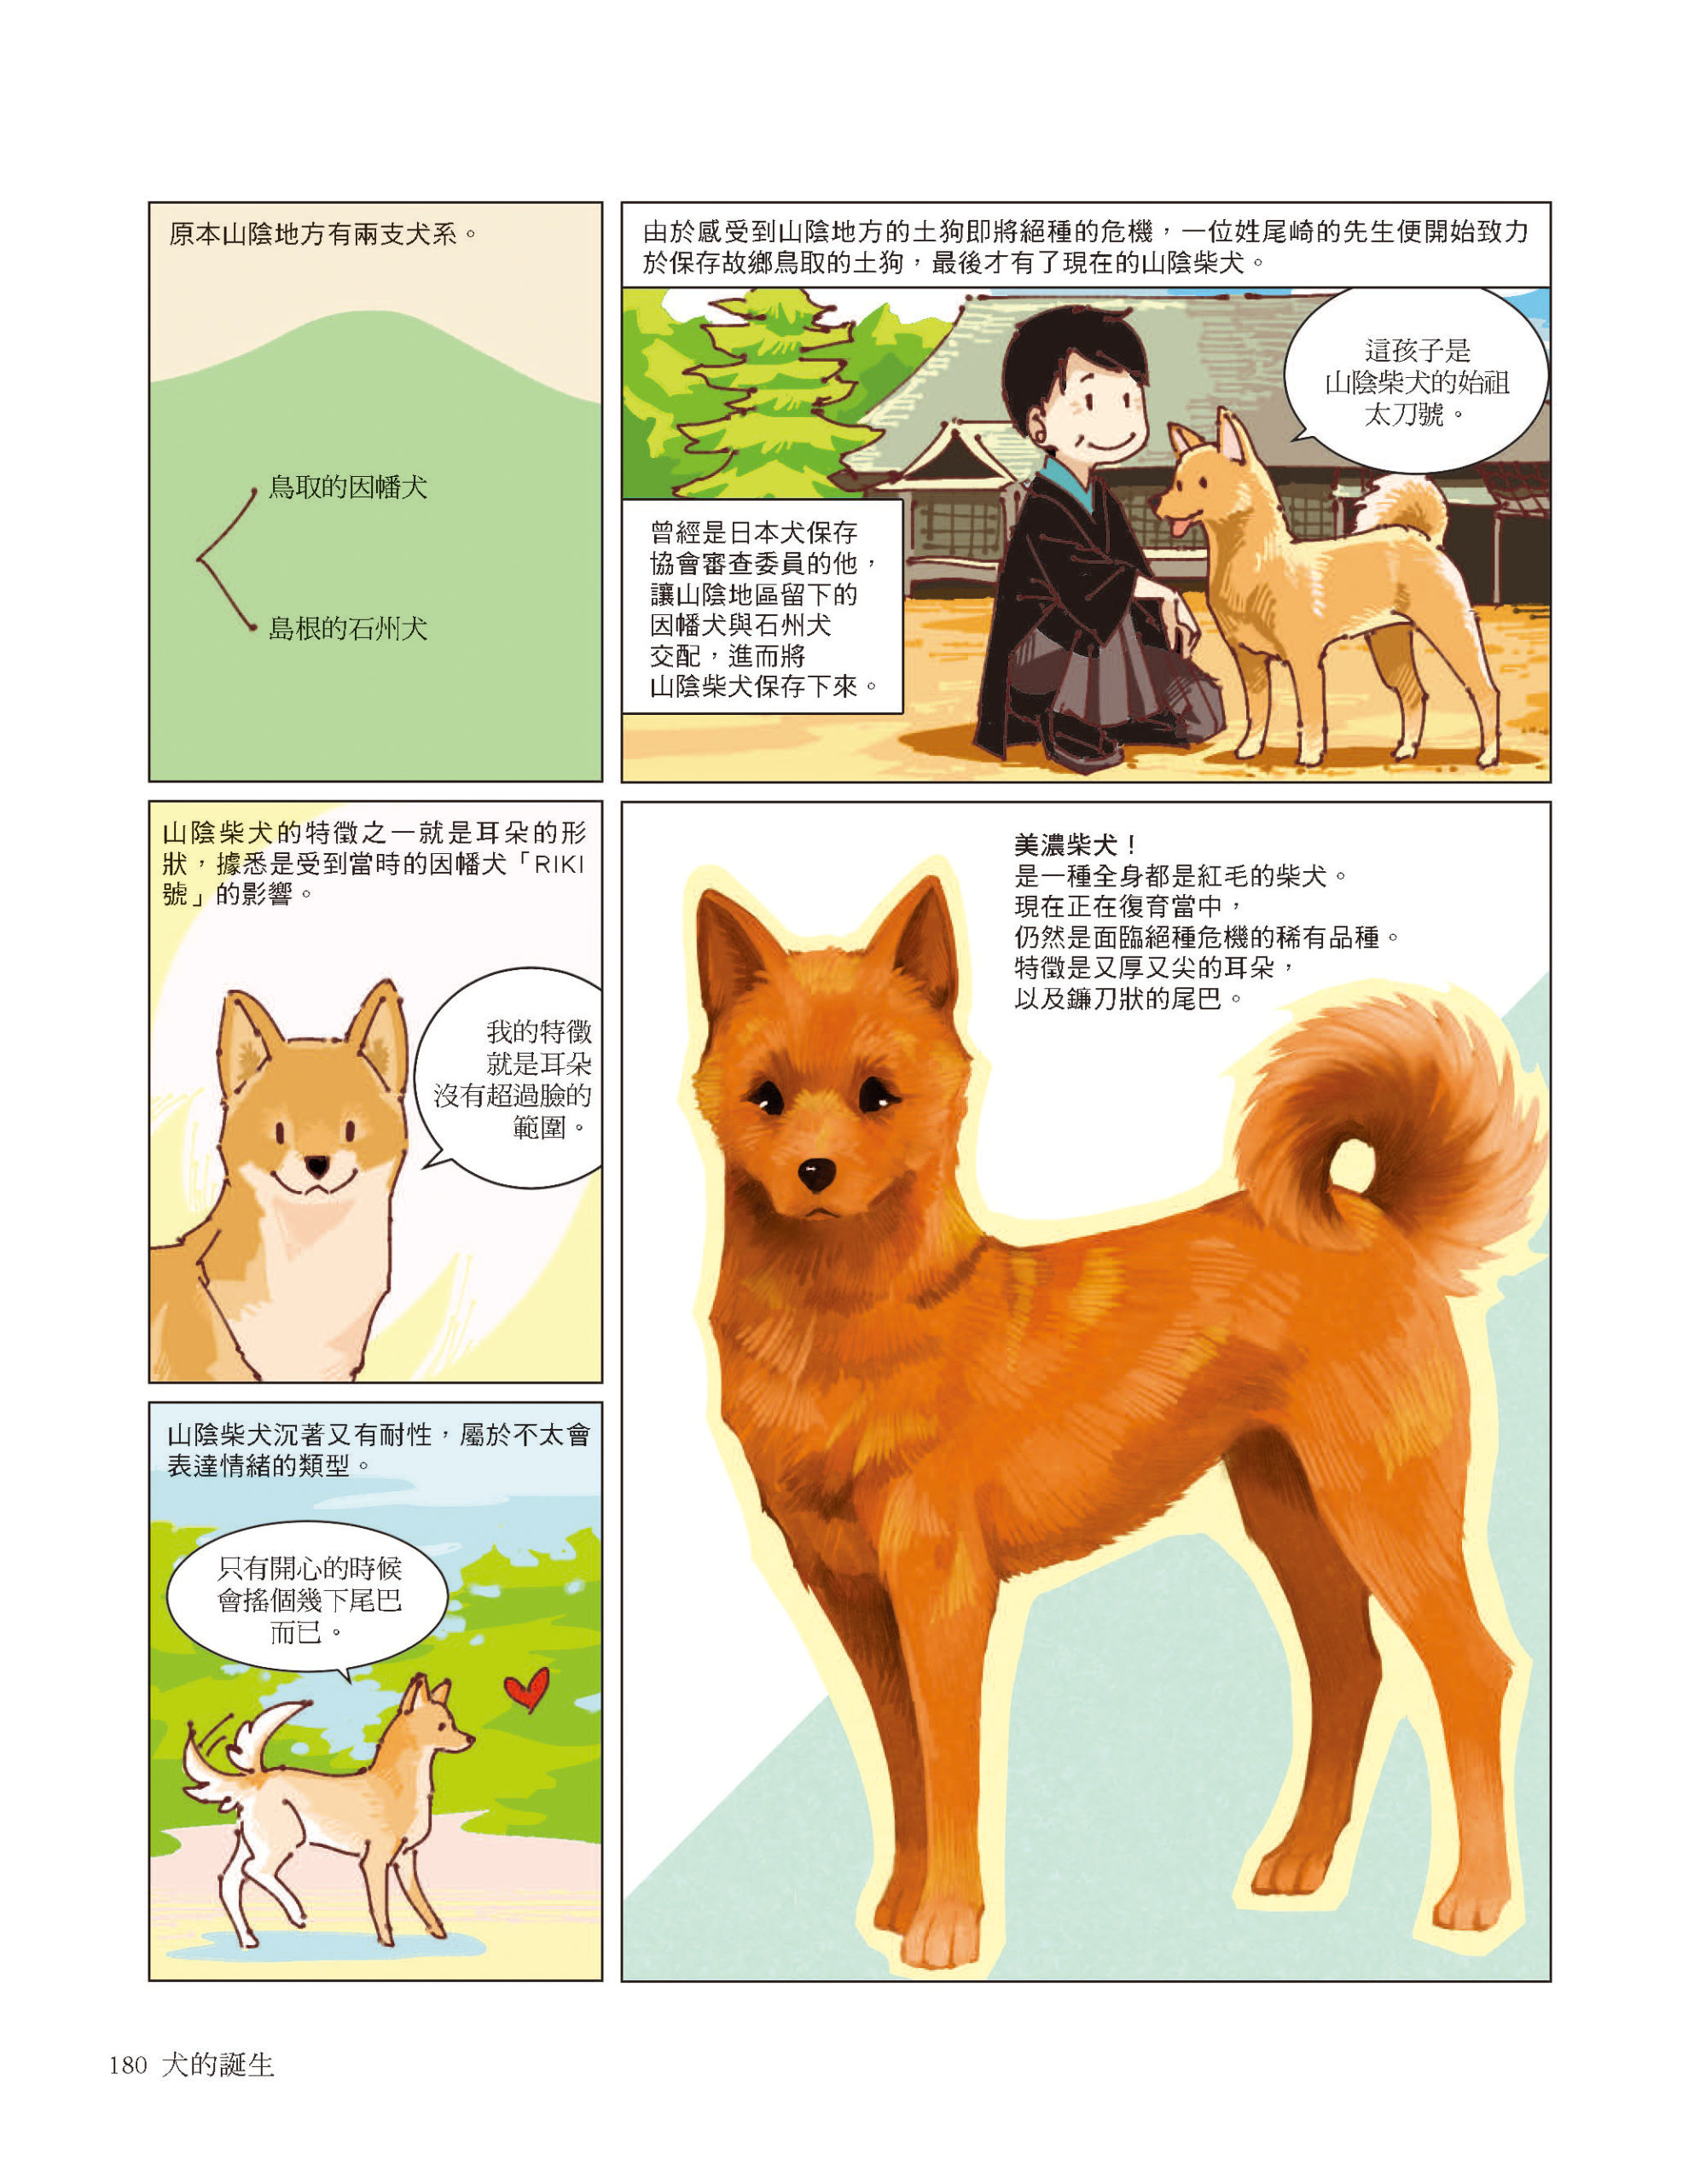 柴犬是日本的天然紀念物　《犬的誕生》一覽柴柴的身世之謎　《犬的誕生》一覽柴柴的身世之謎